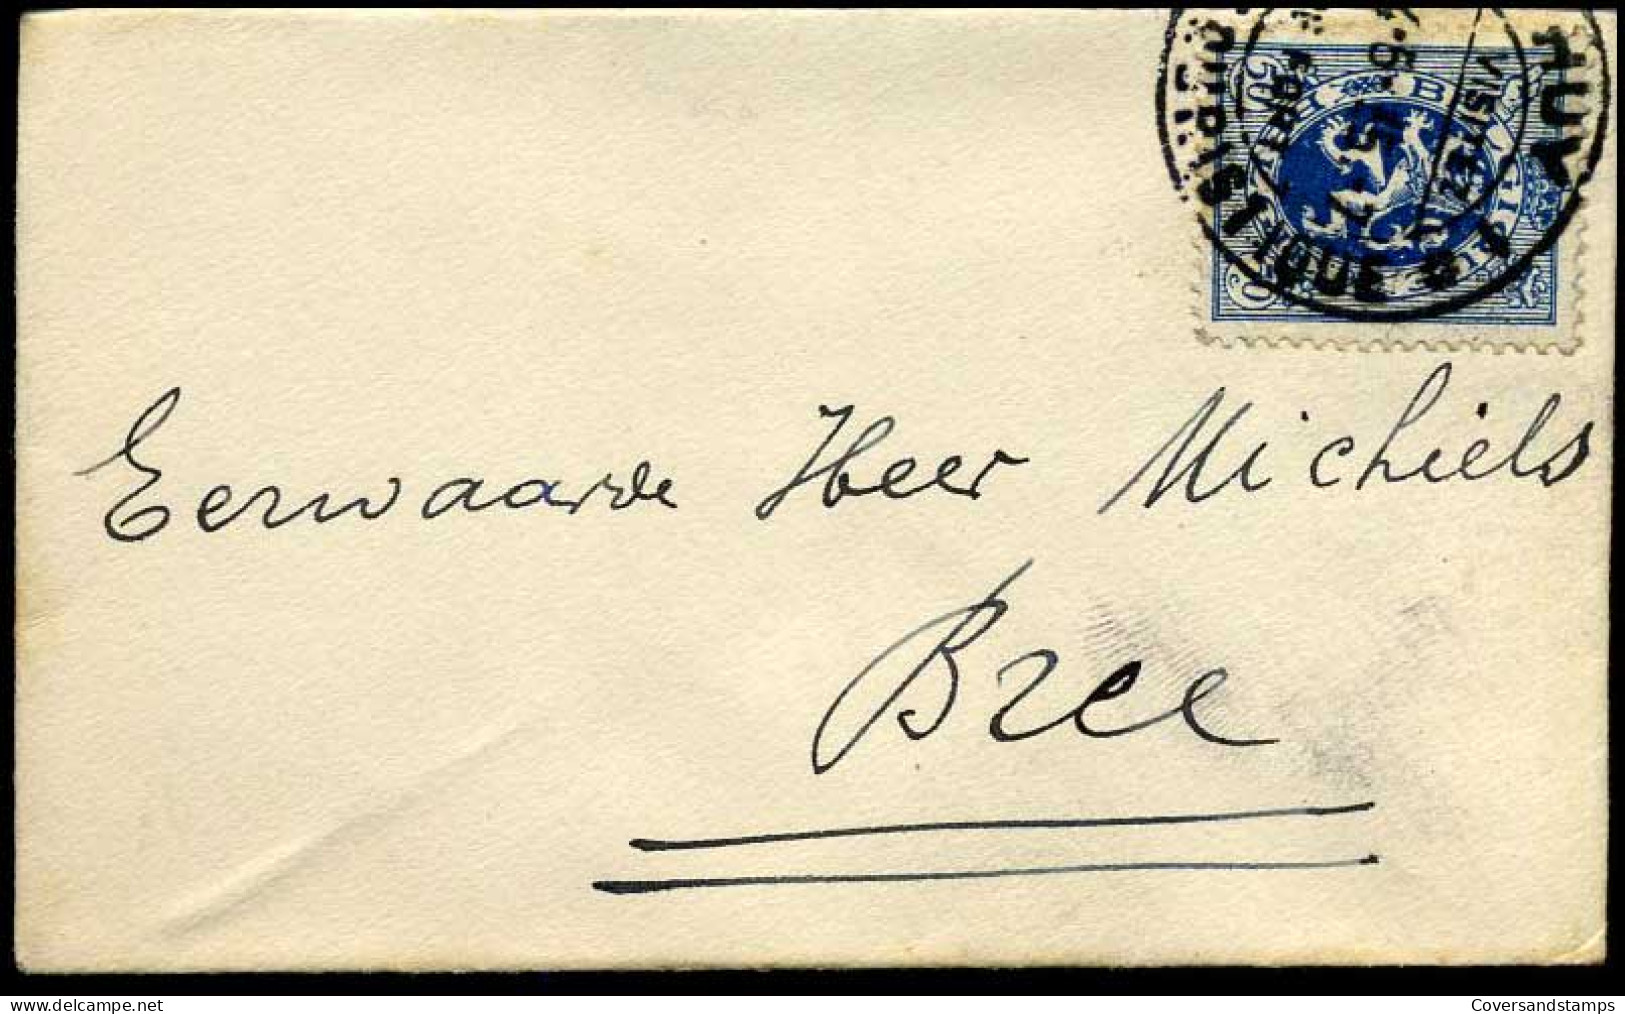 Kleine Envelop / Petite Enveloppe Met N° 285 - 1929-1937 Leone Araldico